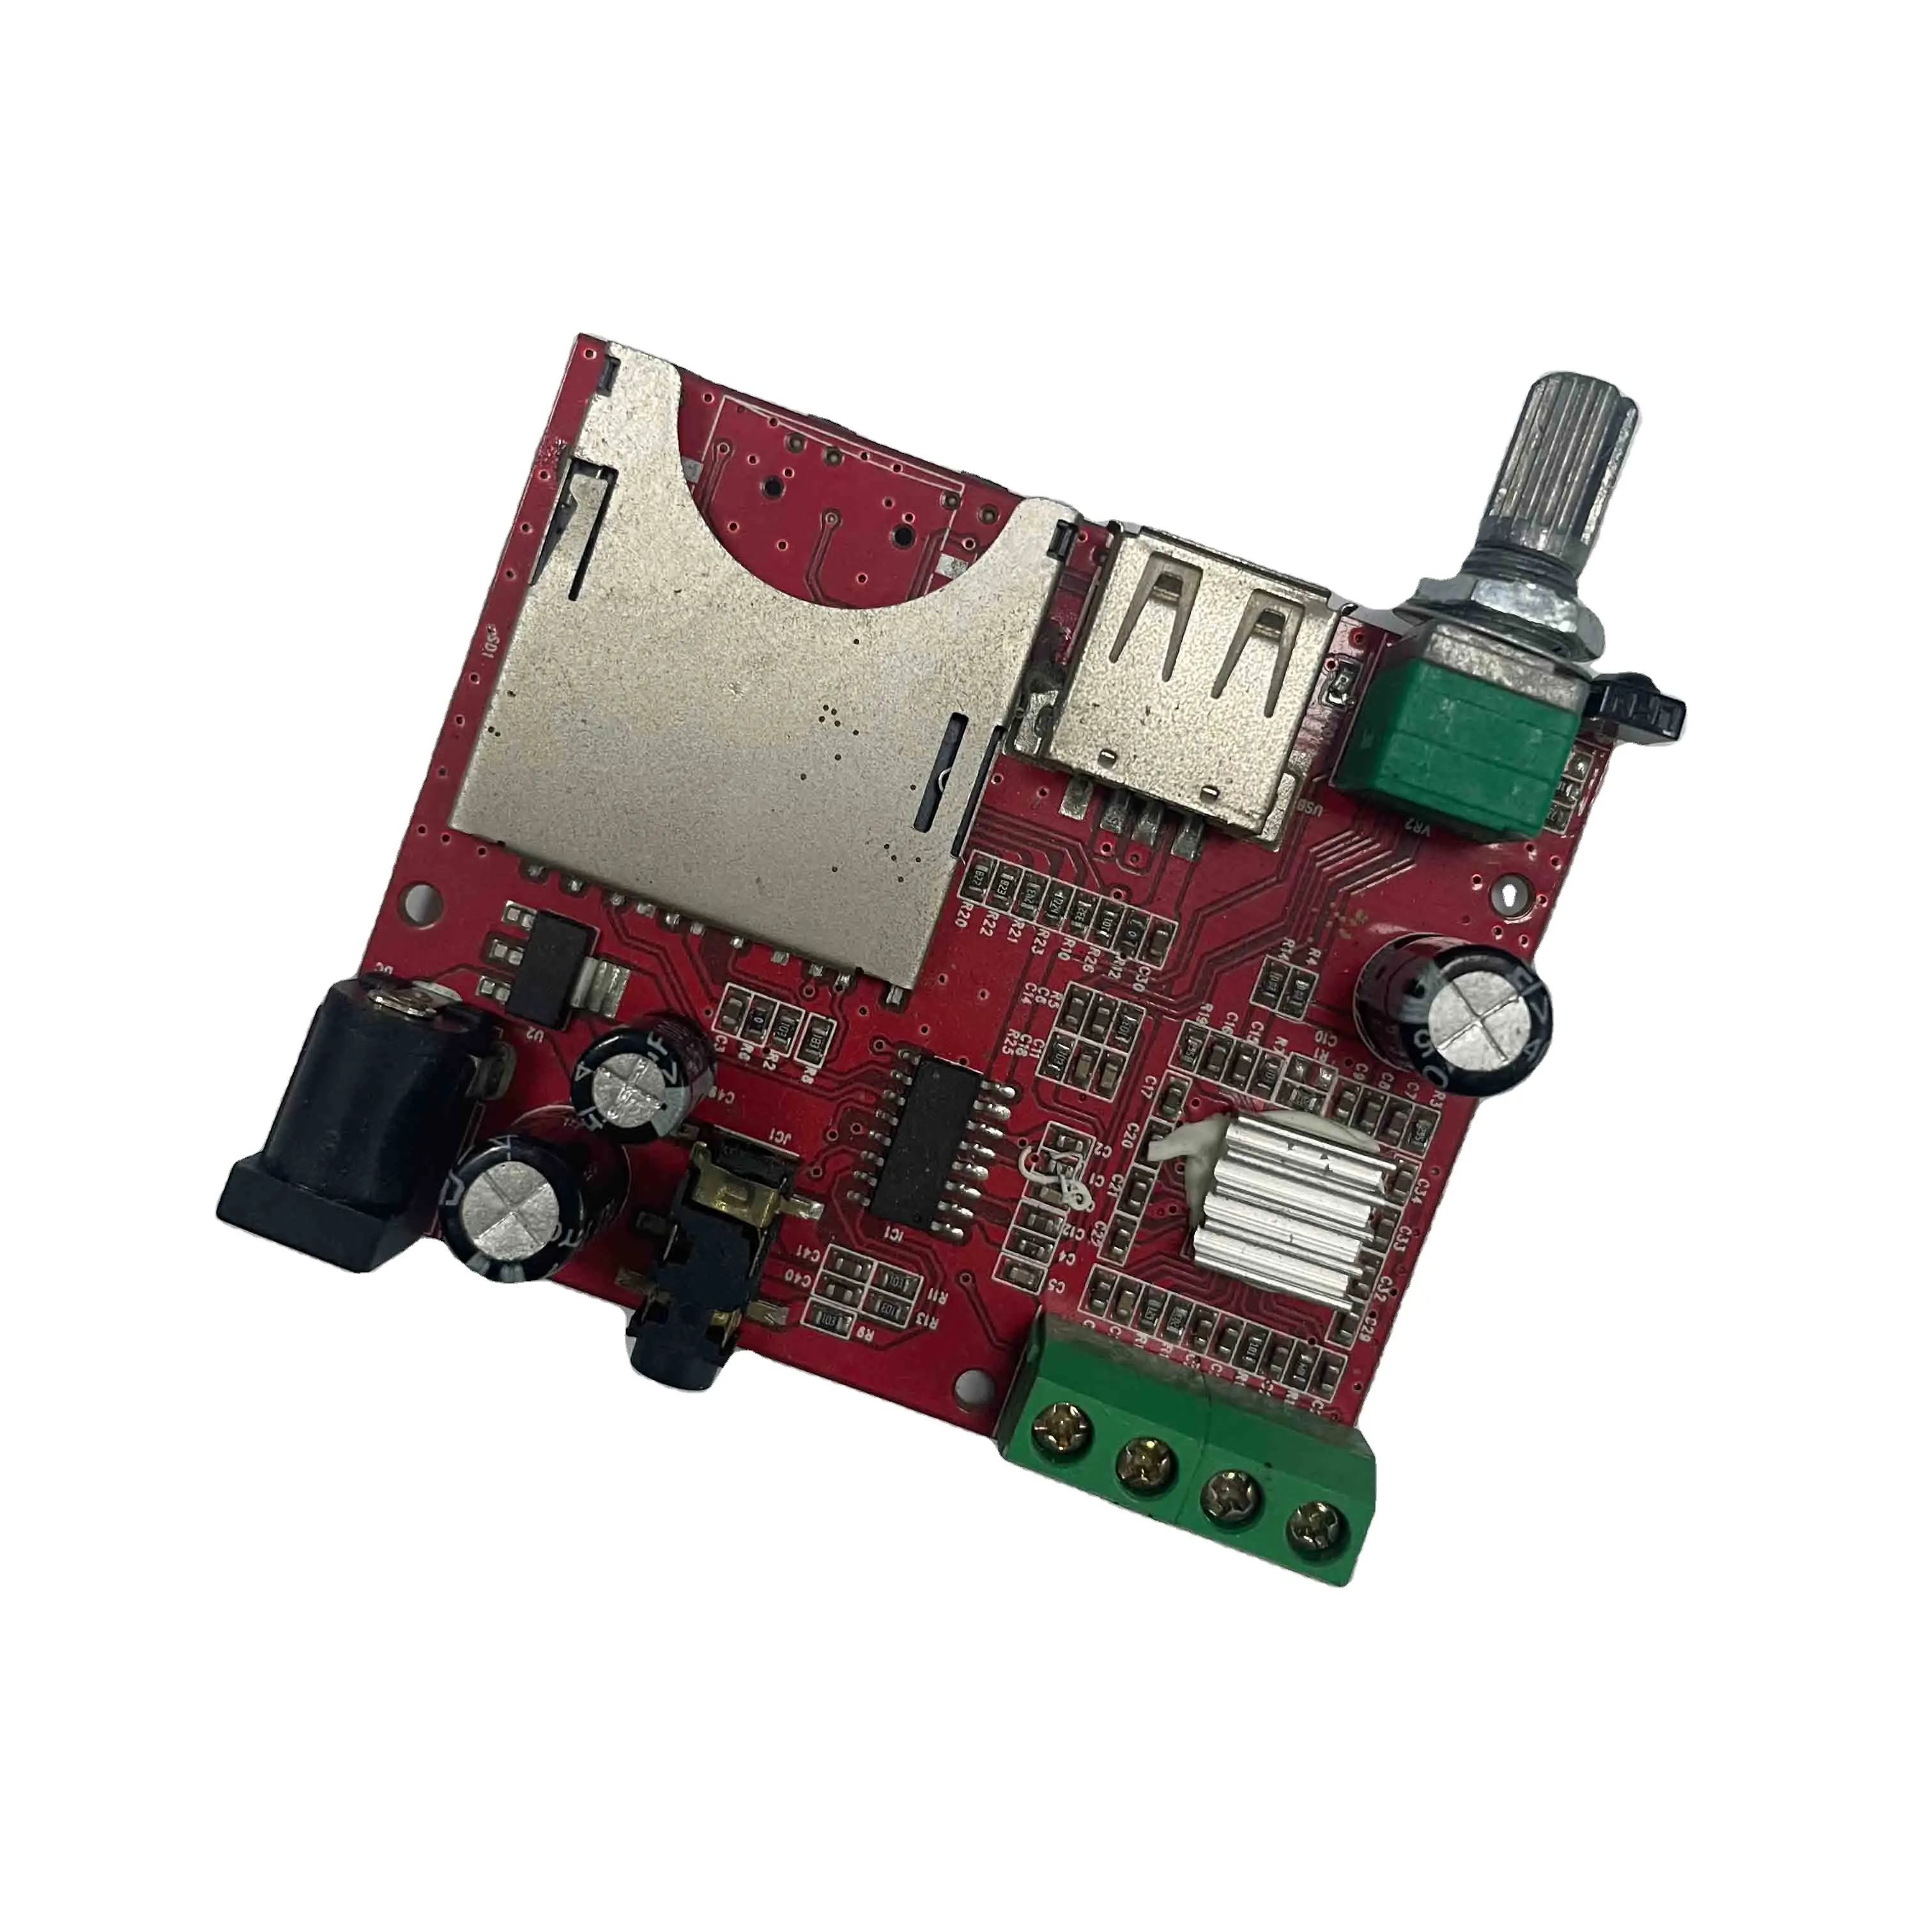 Reprodutor USB SD Placa de Rádio PCB & Módulo PCBA com placa decodificadora MP3 Produto com base nos EUA